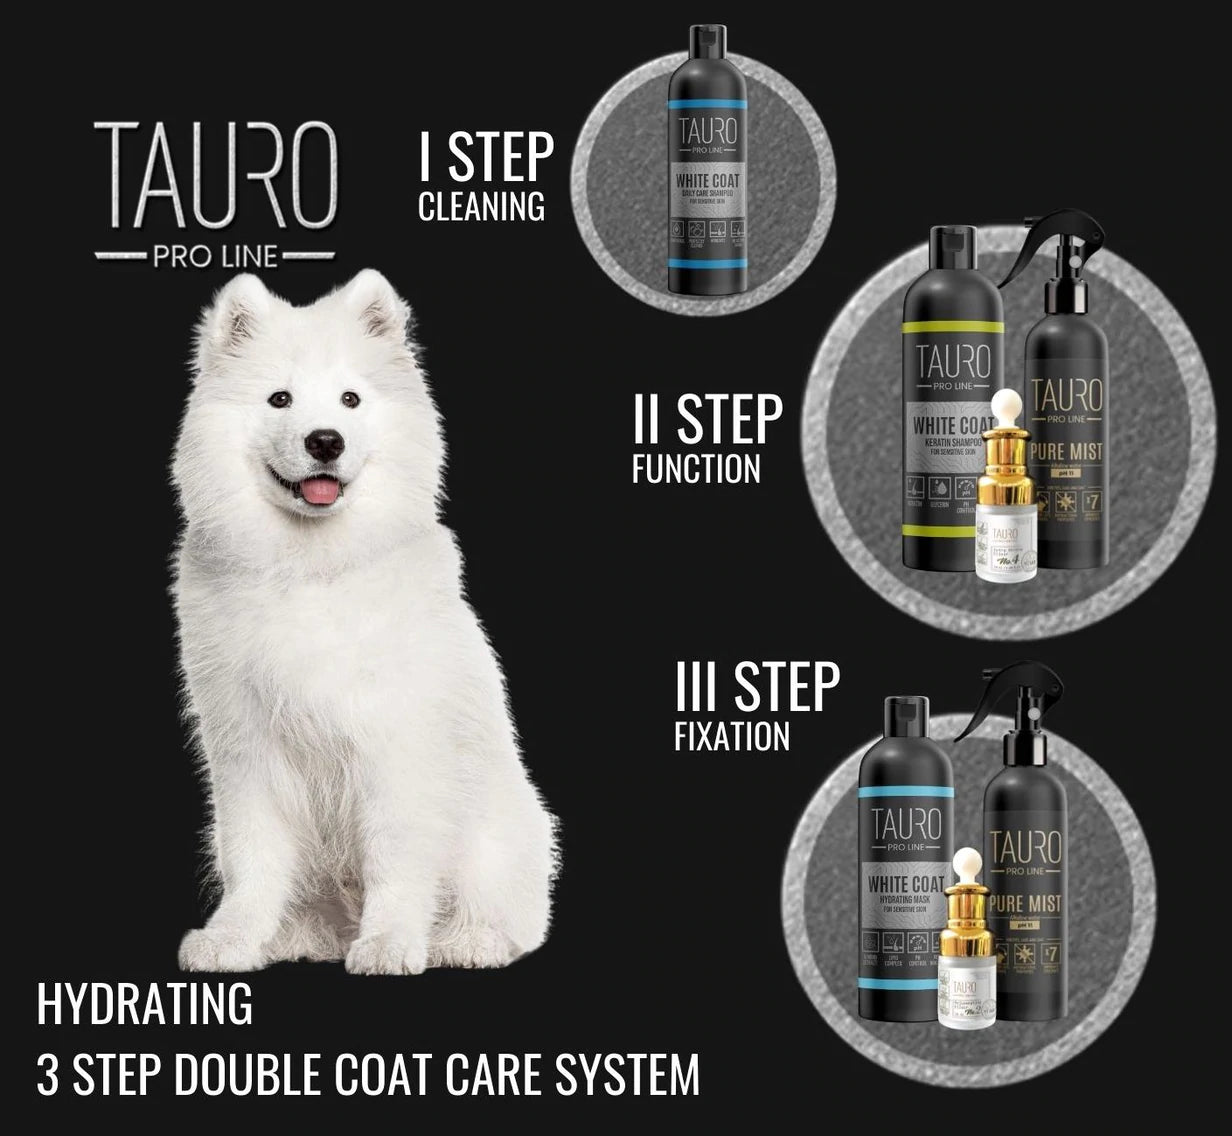 Tauro Pro Line - White Coat whitening shampoo